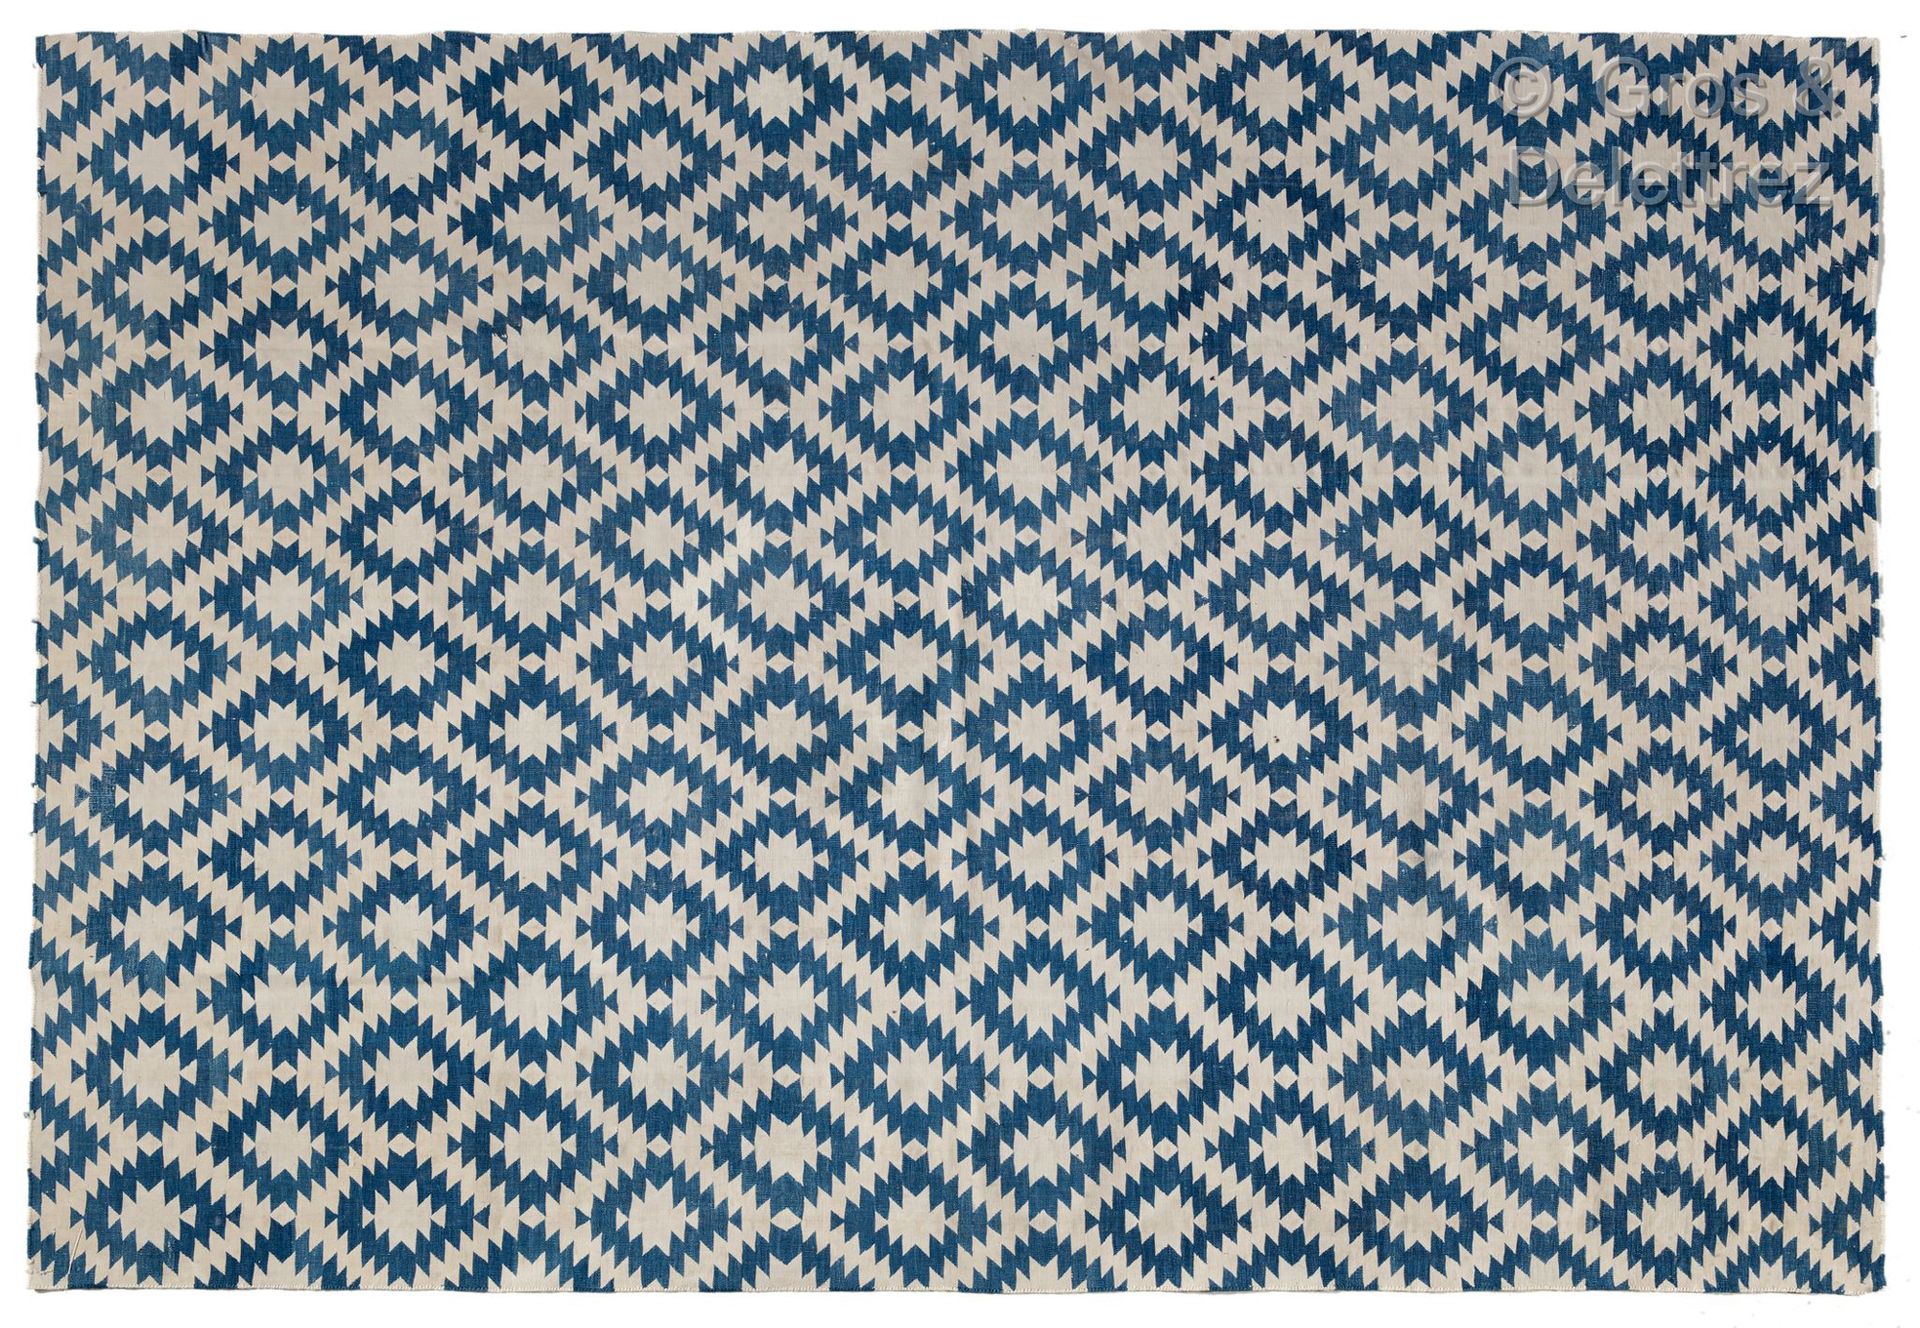 INDIAN DHURRIE 短羊毛地毯，有蓝色和白色的几何装饰。

尺寸：172 x 225 cm